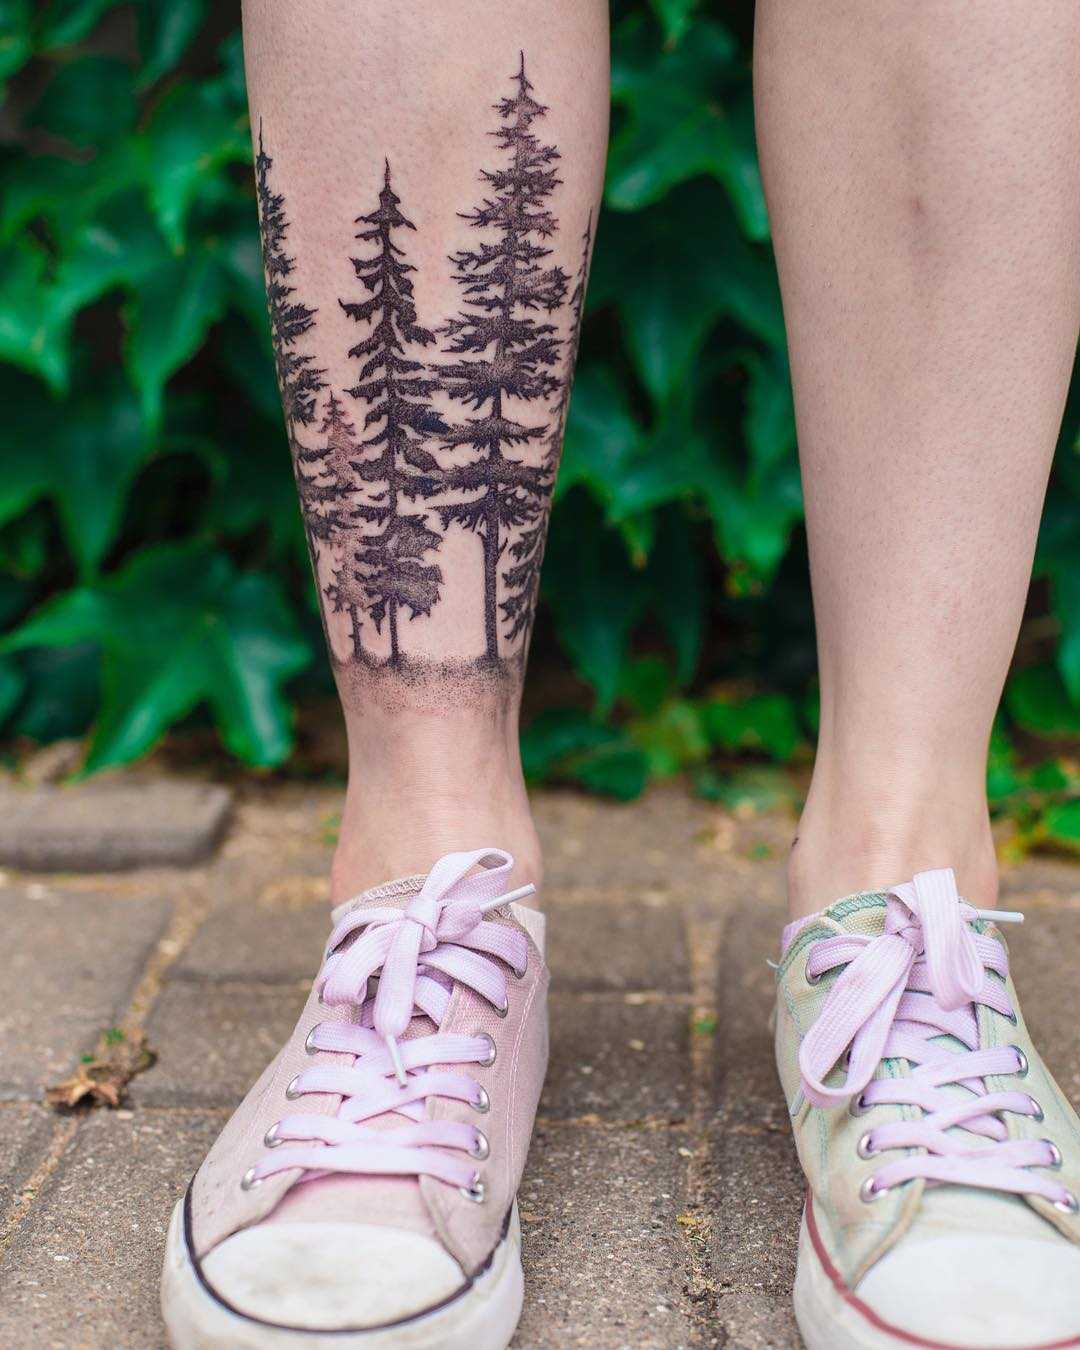 Buy Armband Forest Temporary Tattoo Tattoo Men Viking Tattoo Tattoo Custom  Temporary Pine Trees Temporary Tattoo Forest Lover Gift Online in India -  Etsy